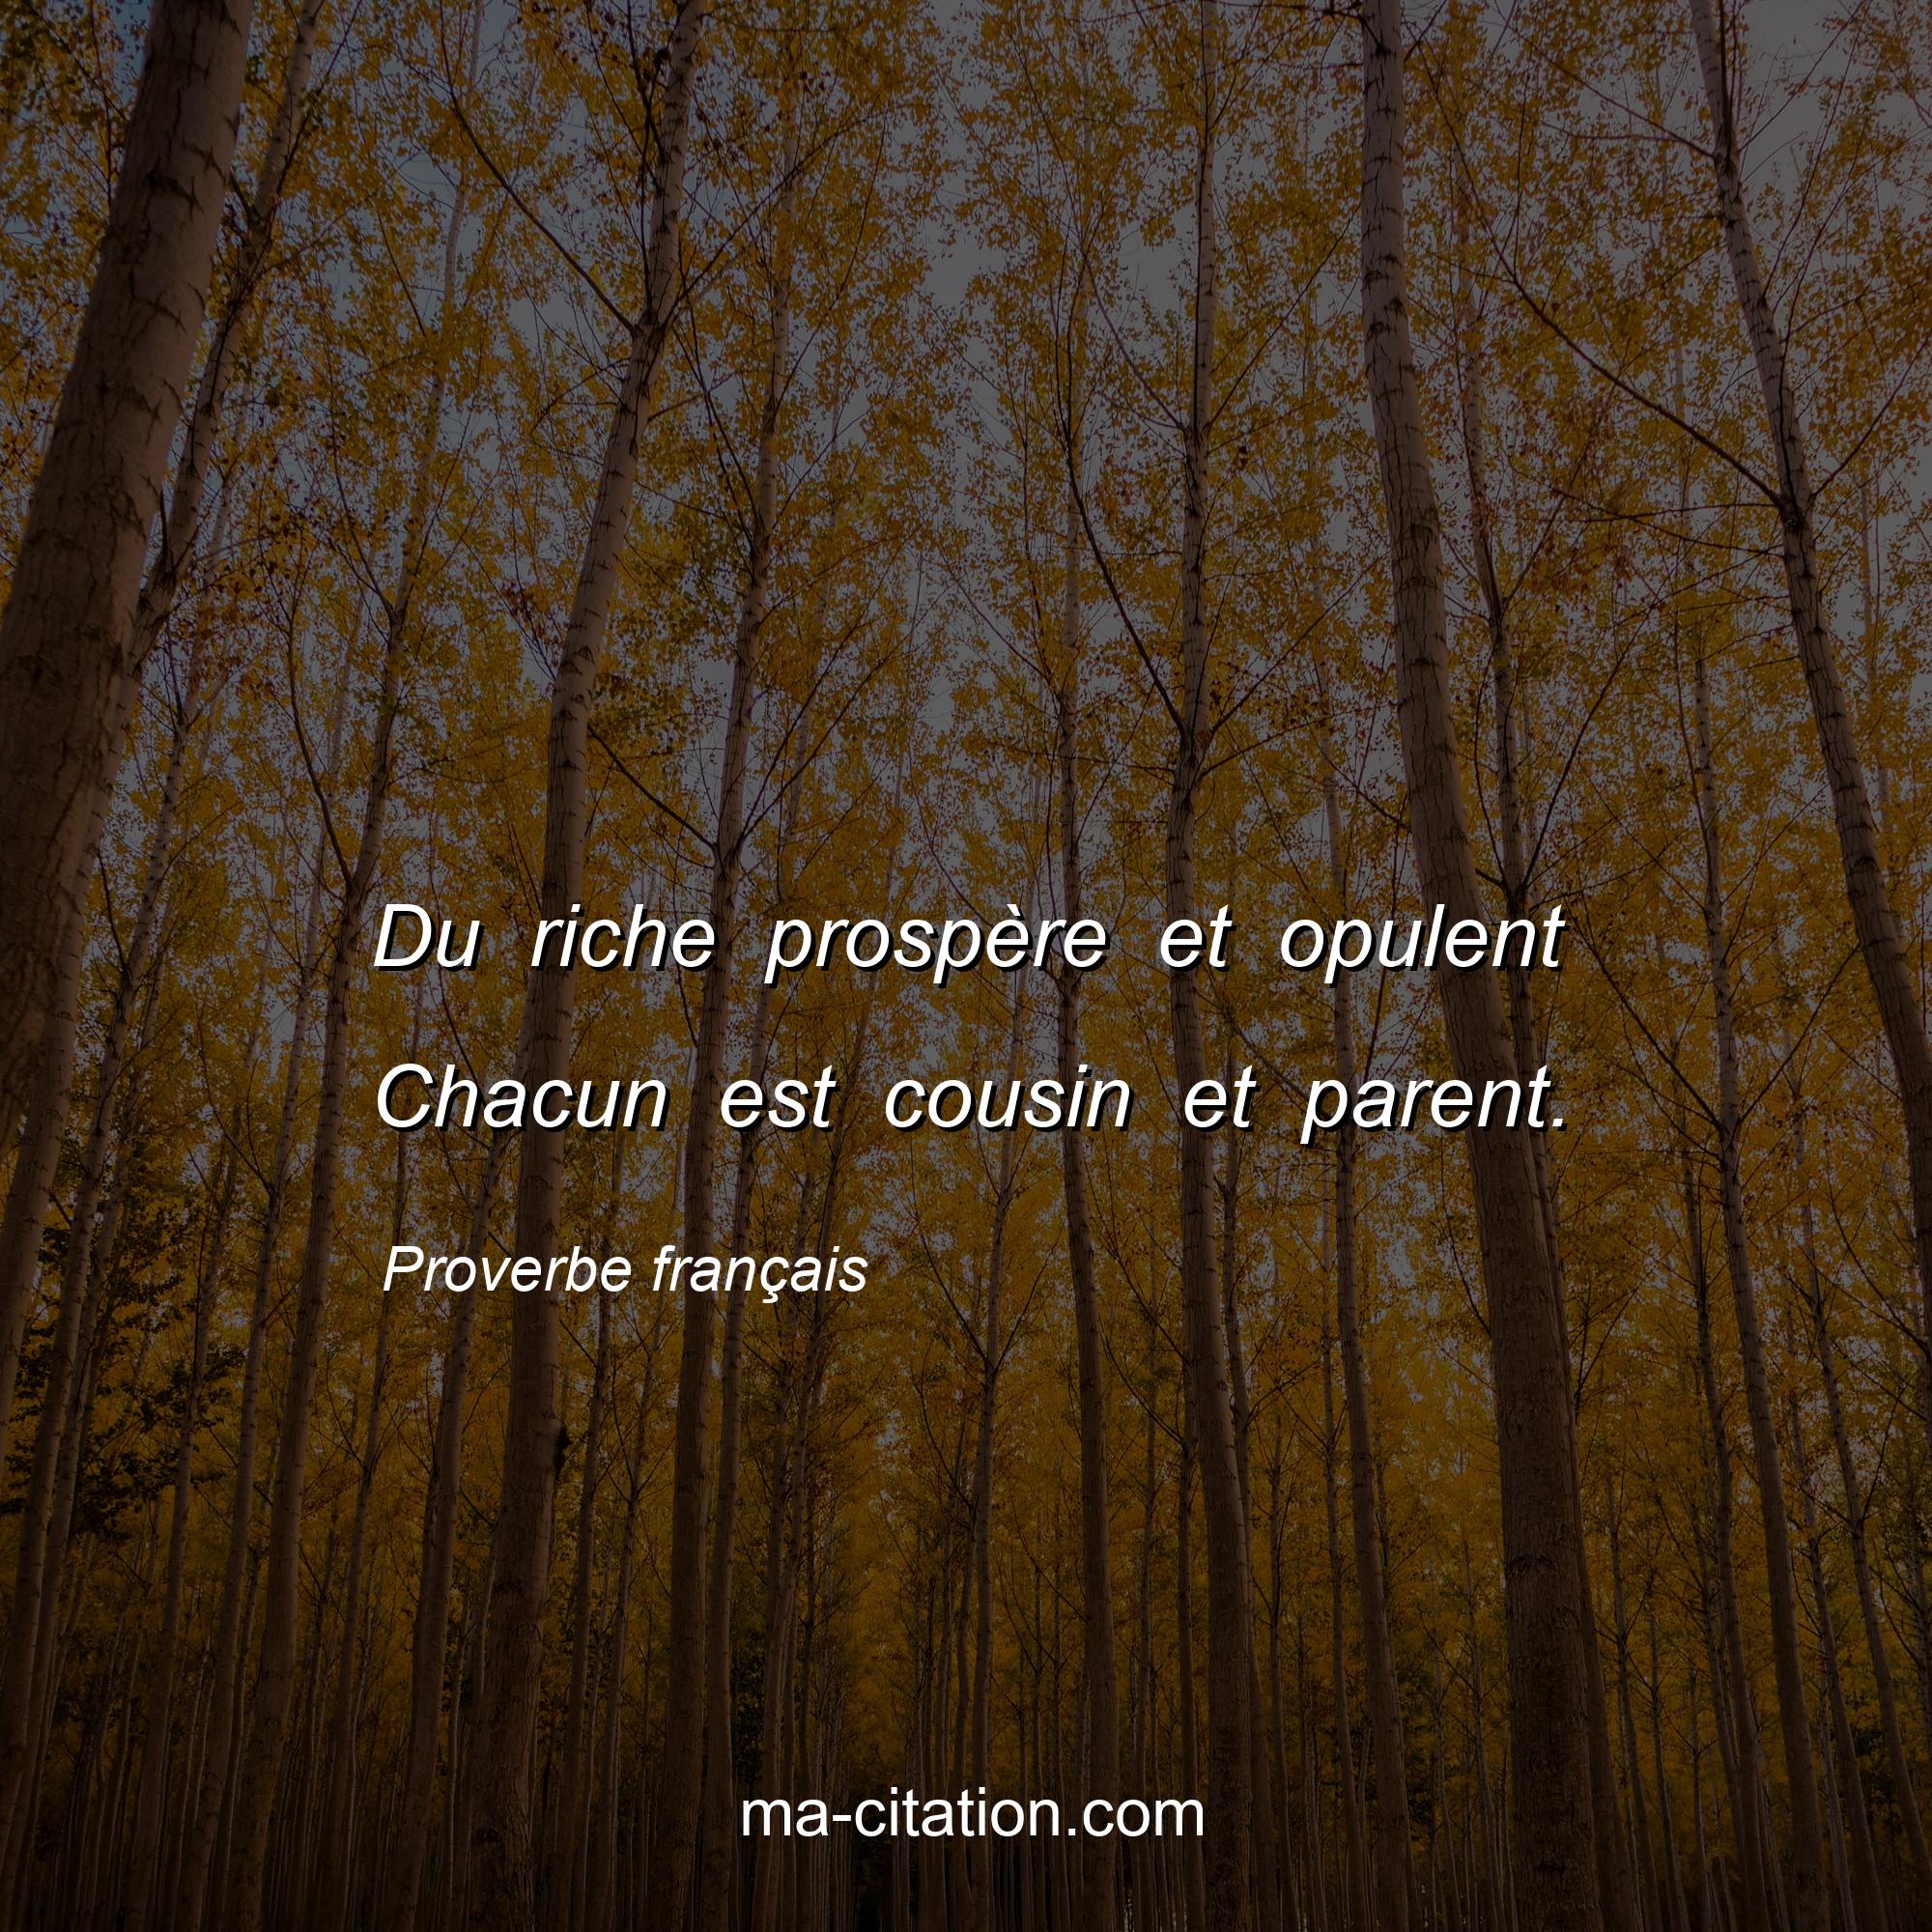 Proverbe français : Du riche prospère et opulent Chacun est cousin et parent.